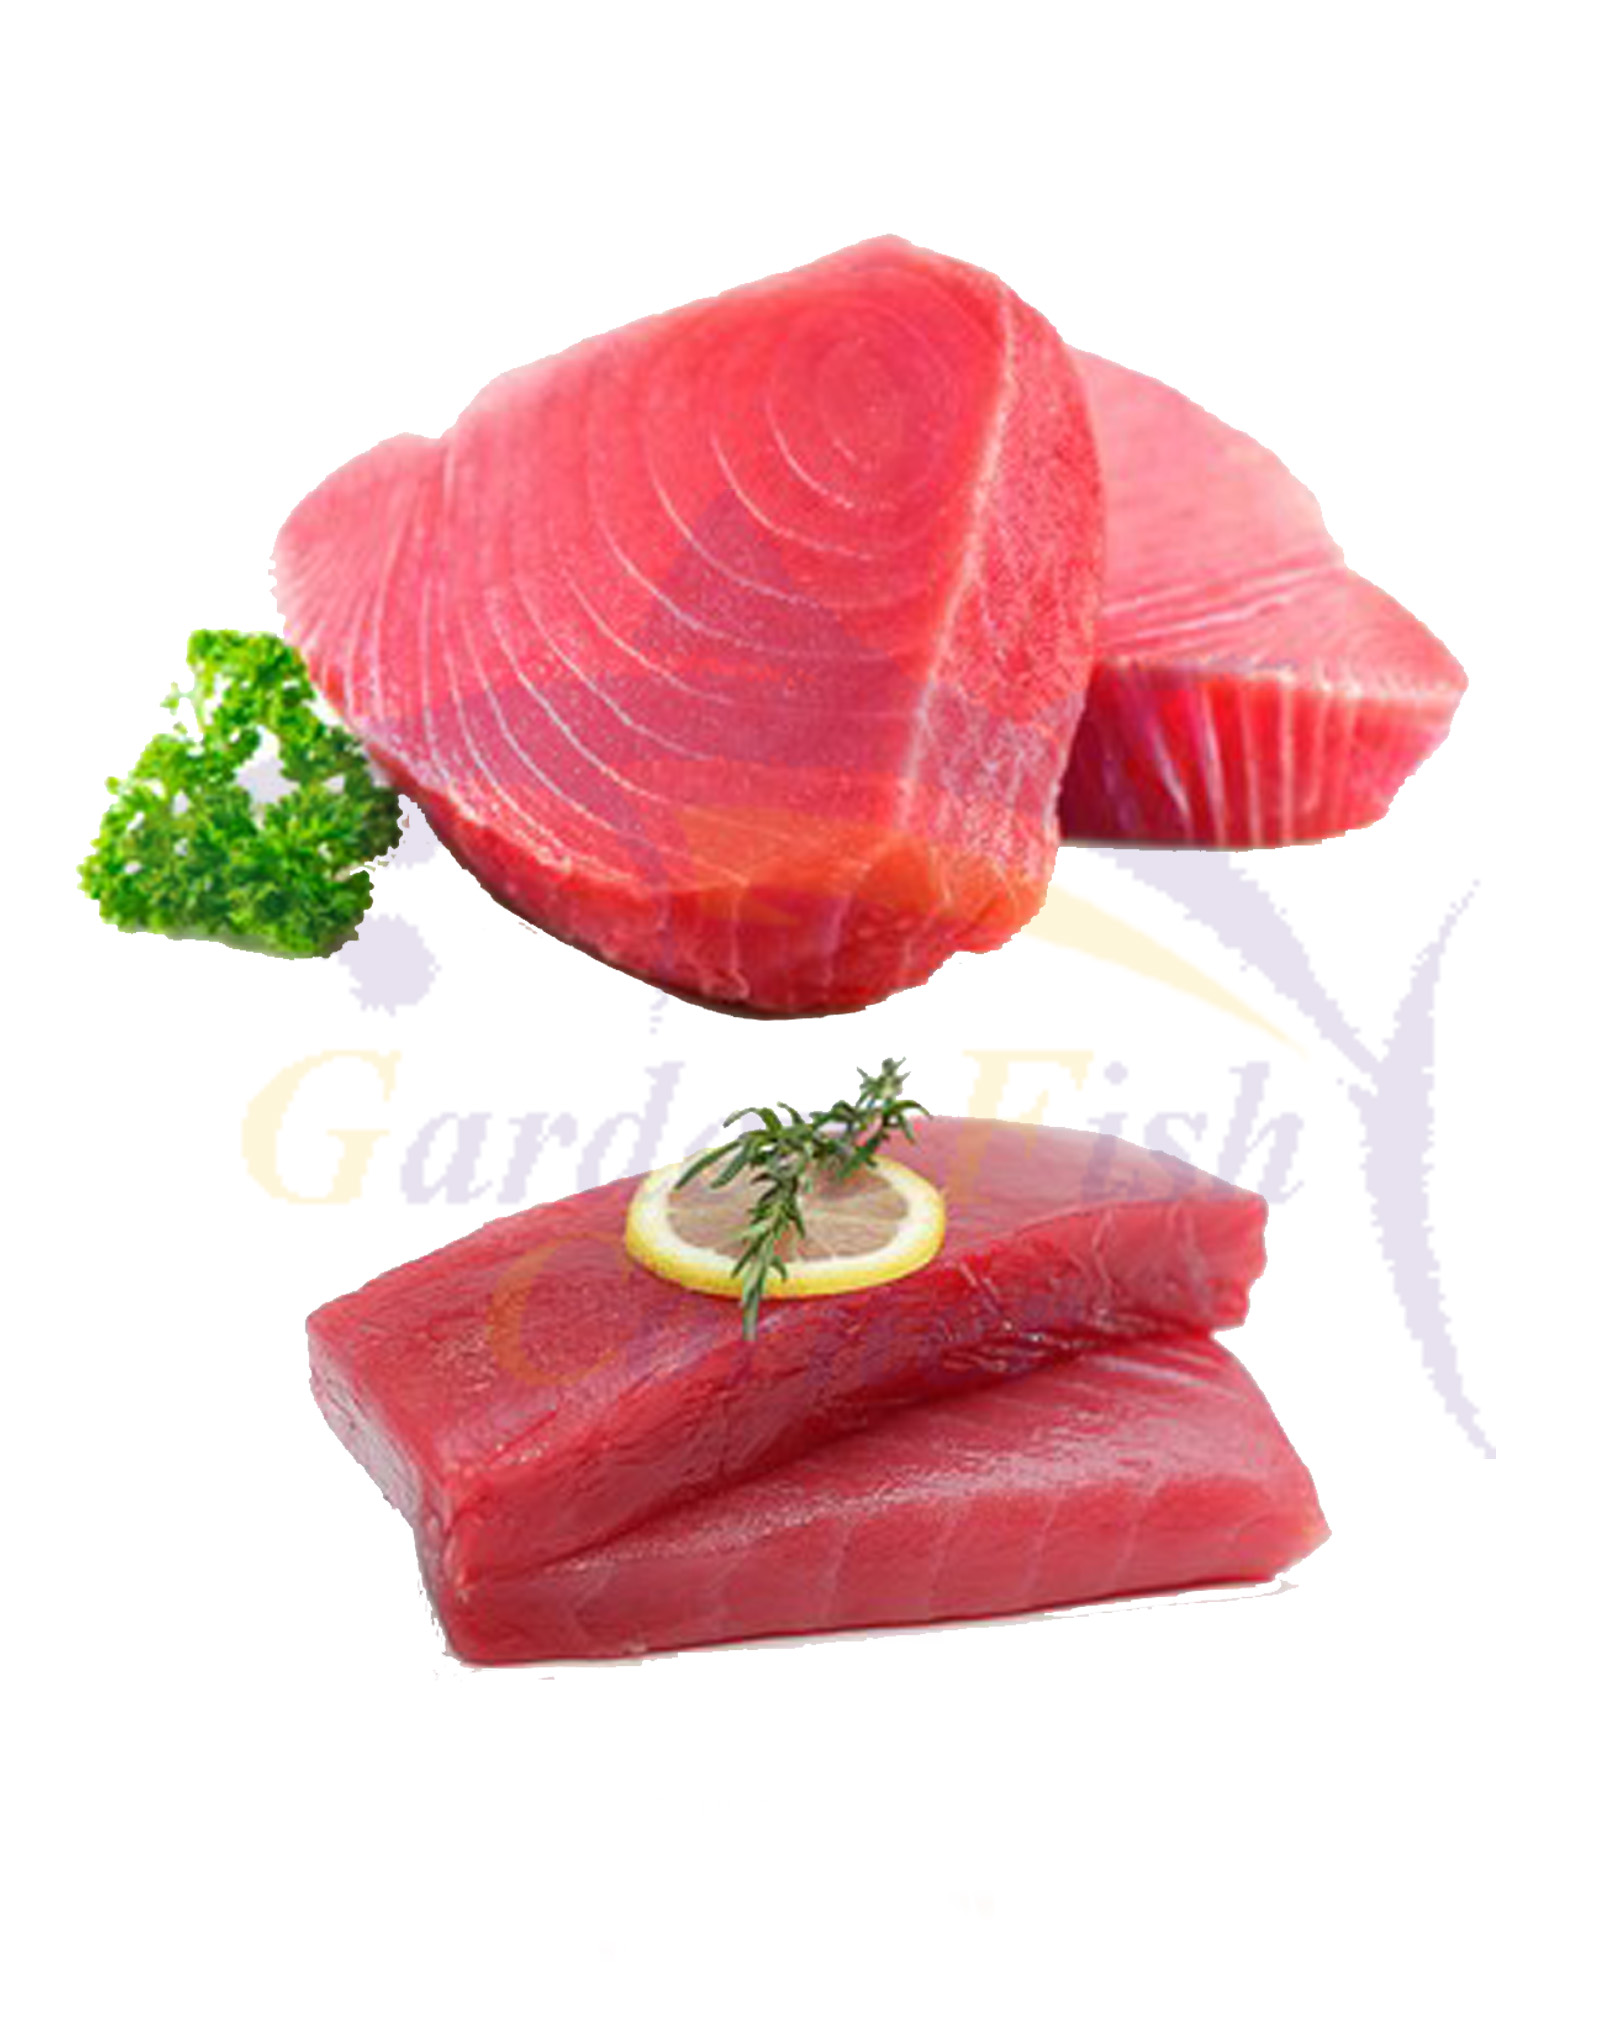 Tuna Fish (Dawan)